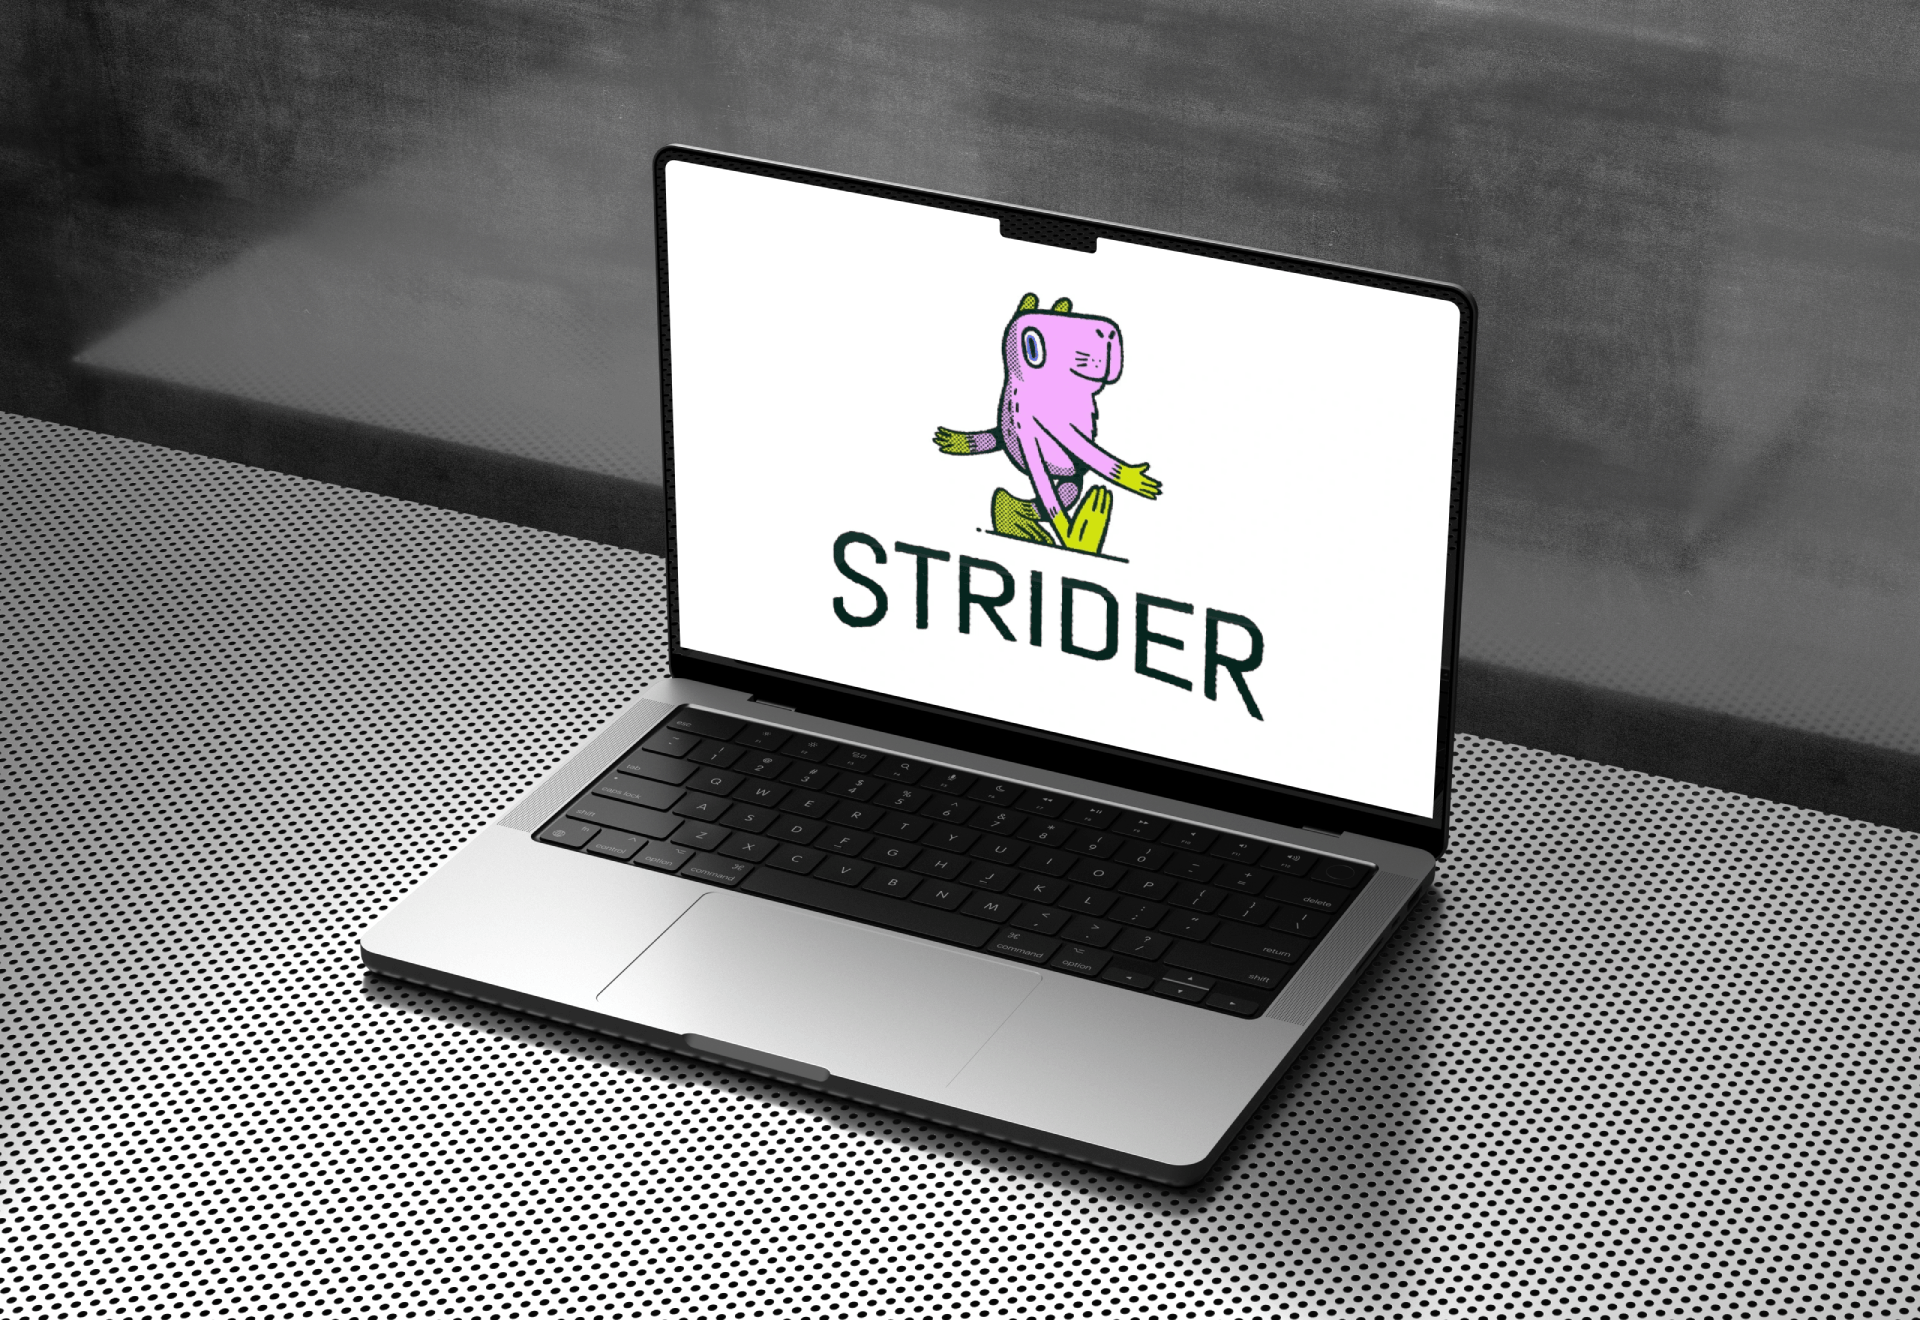 Strider raises $5.5 million in funding for new gaming platform